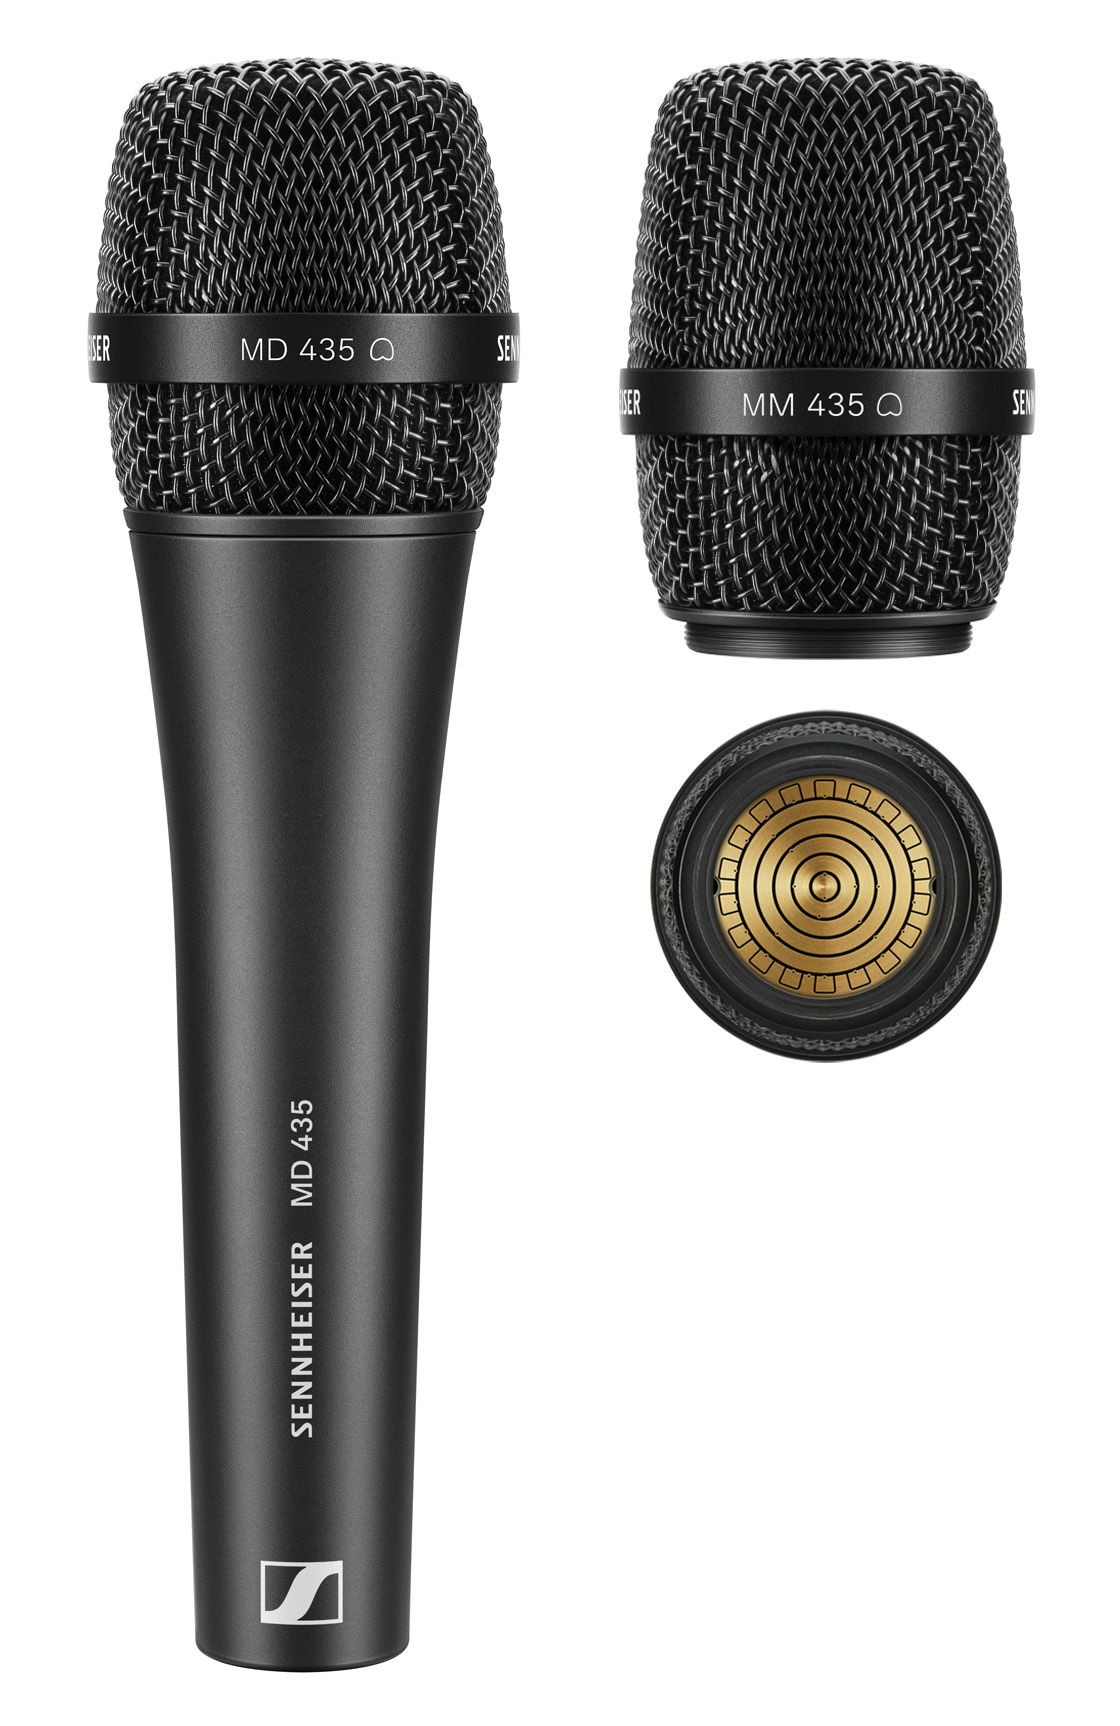 De bedrade zangmicrofoon MD 435 en de MM 435 microfoonkop (hier afgebeeld met capsule) zijn geschikt voor gebruik met Sennheiser draadloze zenders.